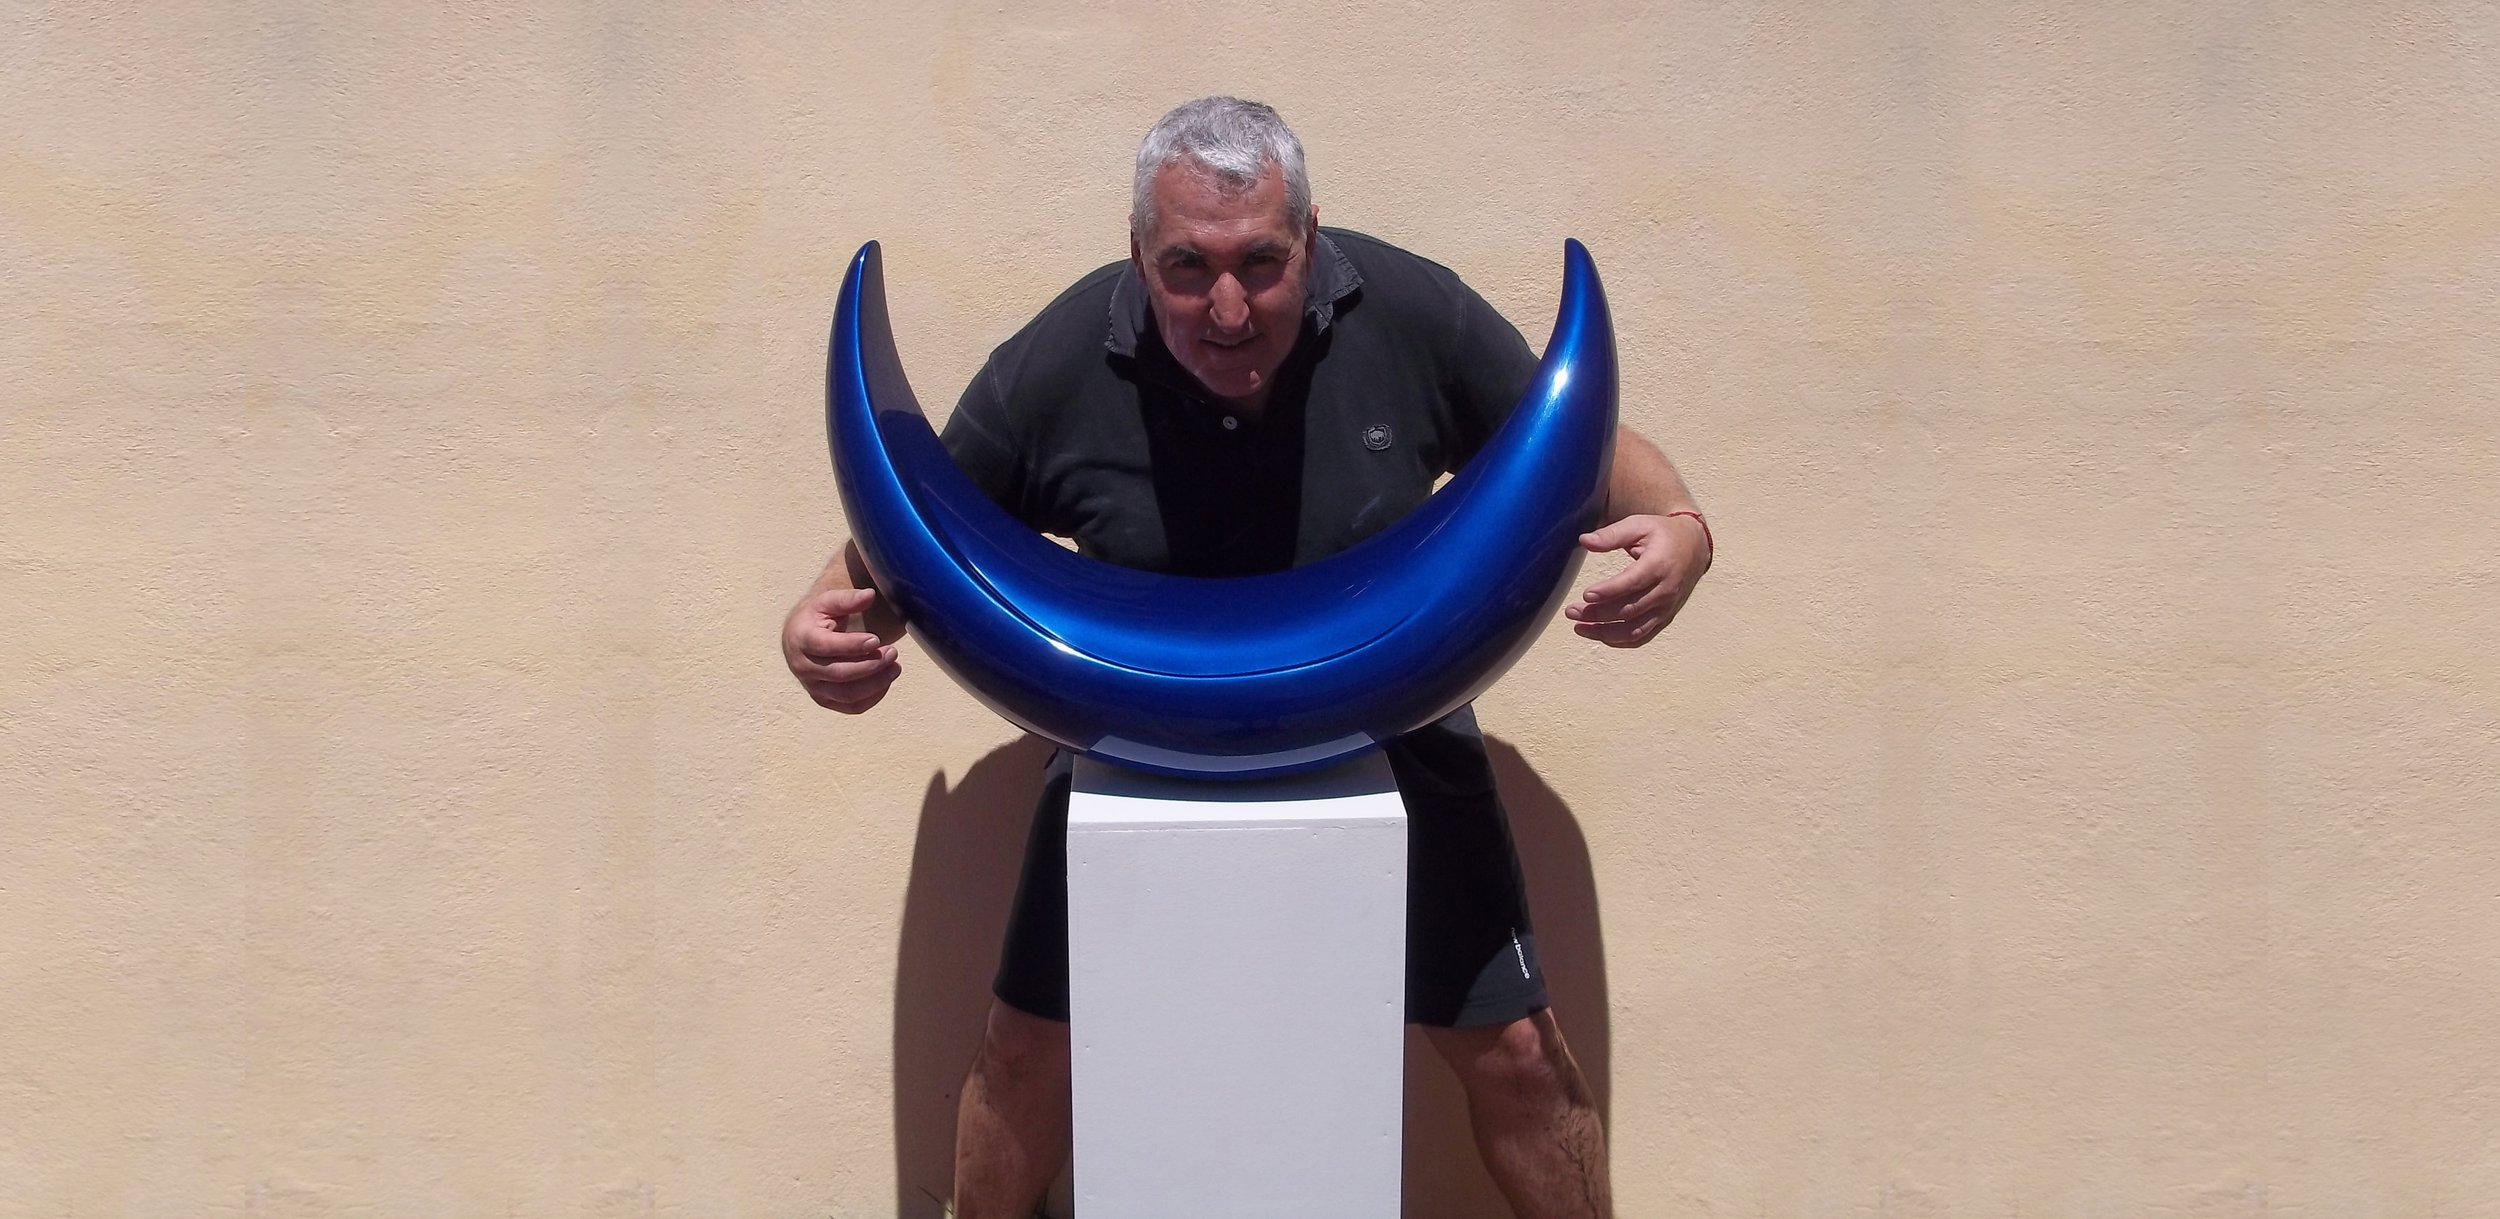 El escultor uruguayo Mauro Arbiza trabajando en sus esculturas Monumentales flotantes, aéreas, en sus esculturas minimalistas futuristas